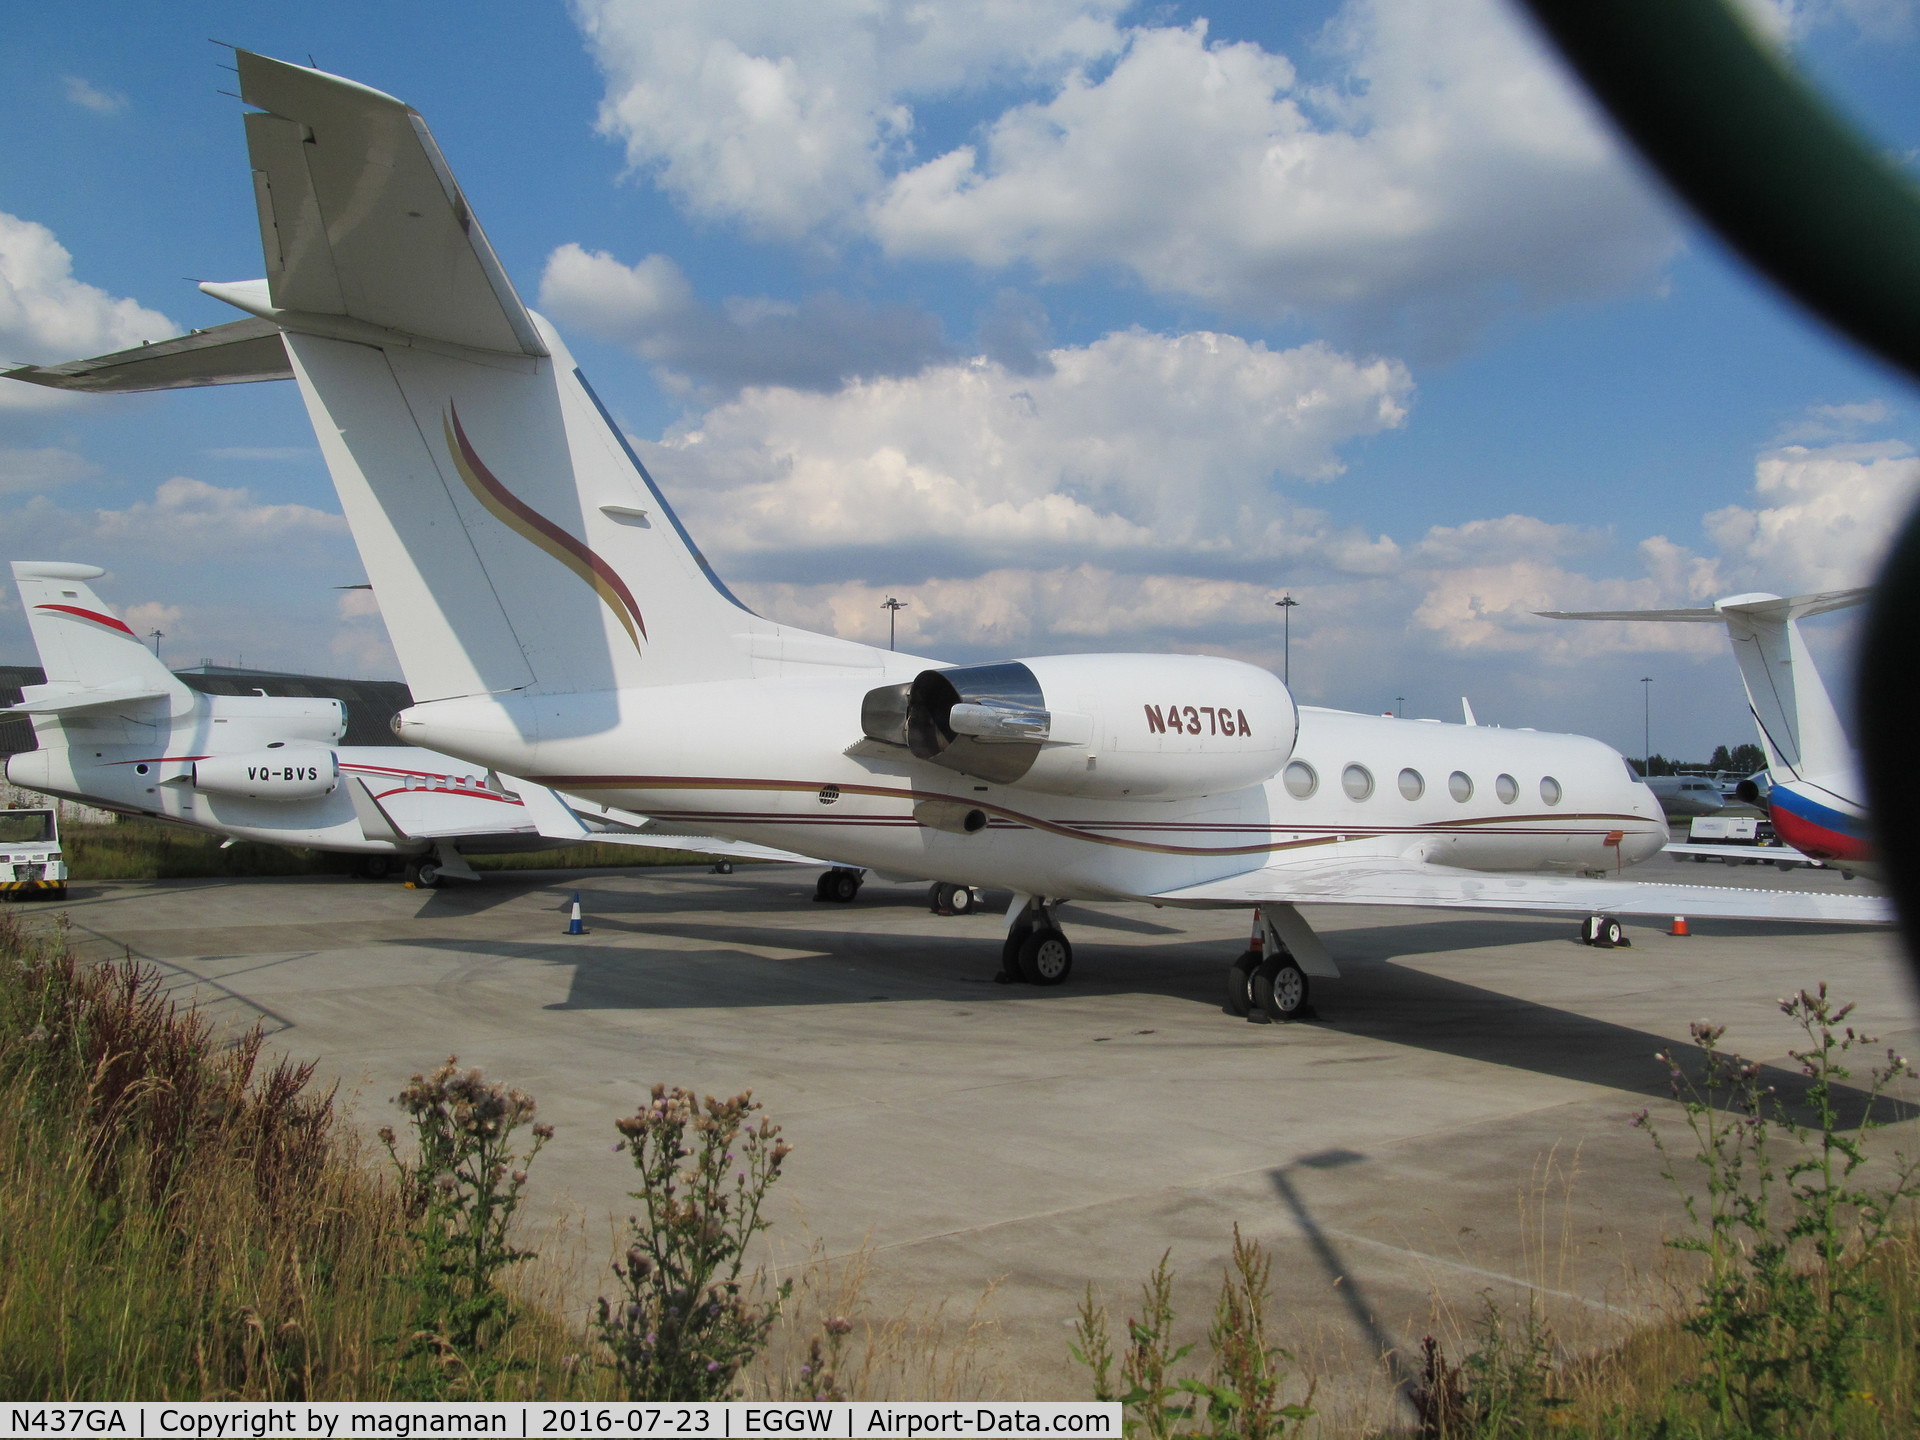 N437GA, 2001 Gulfstream Aerospace G-IV C/N 1437, at luton